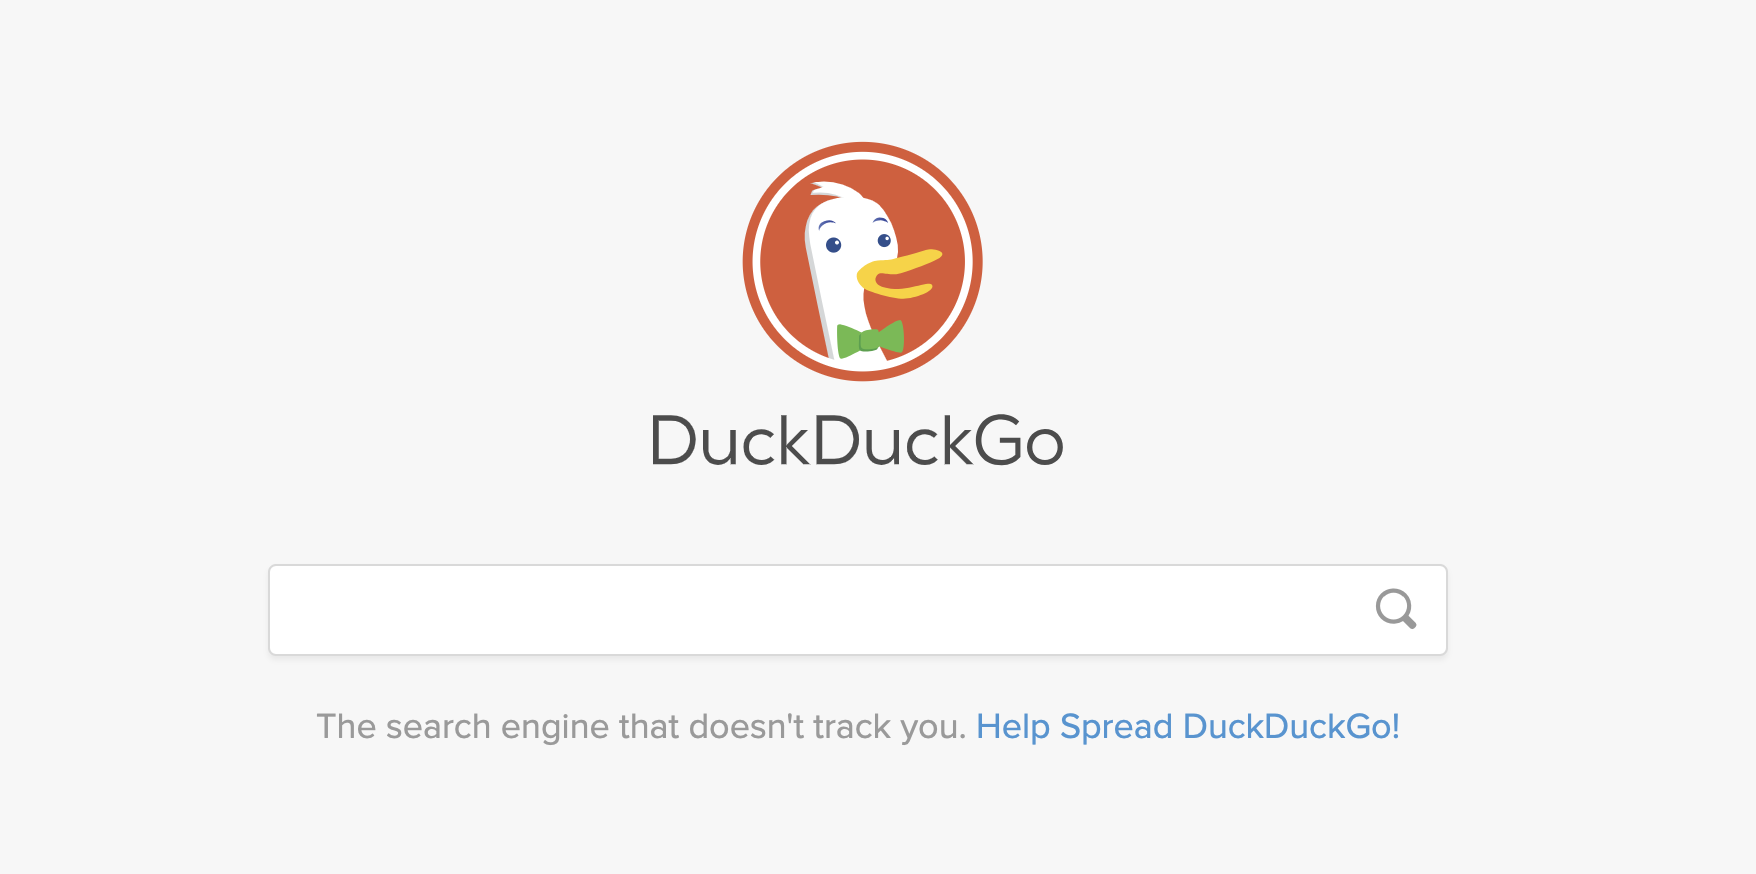 DuckDuckGo Gagal Kembangkan AI, DuckAssist Batal Rilis!